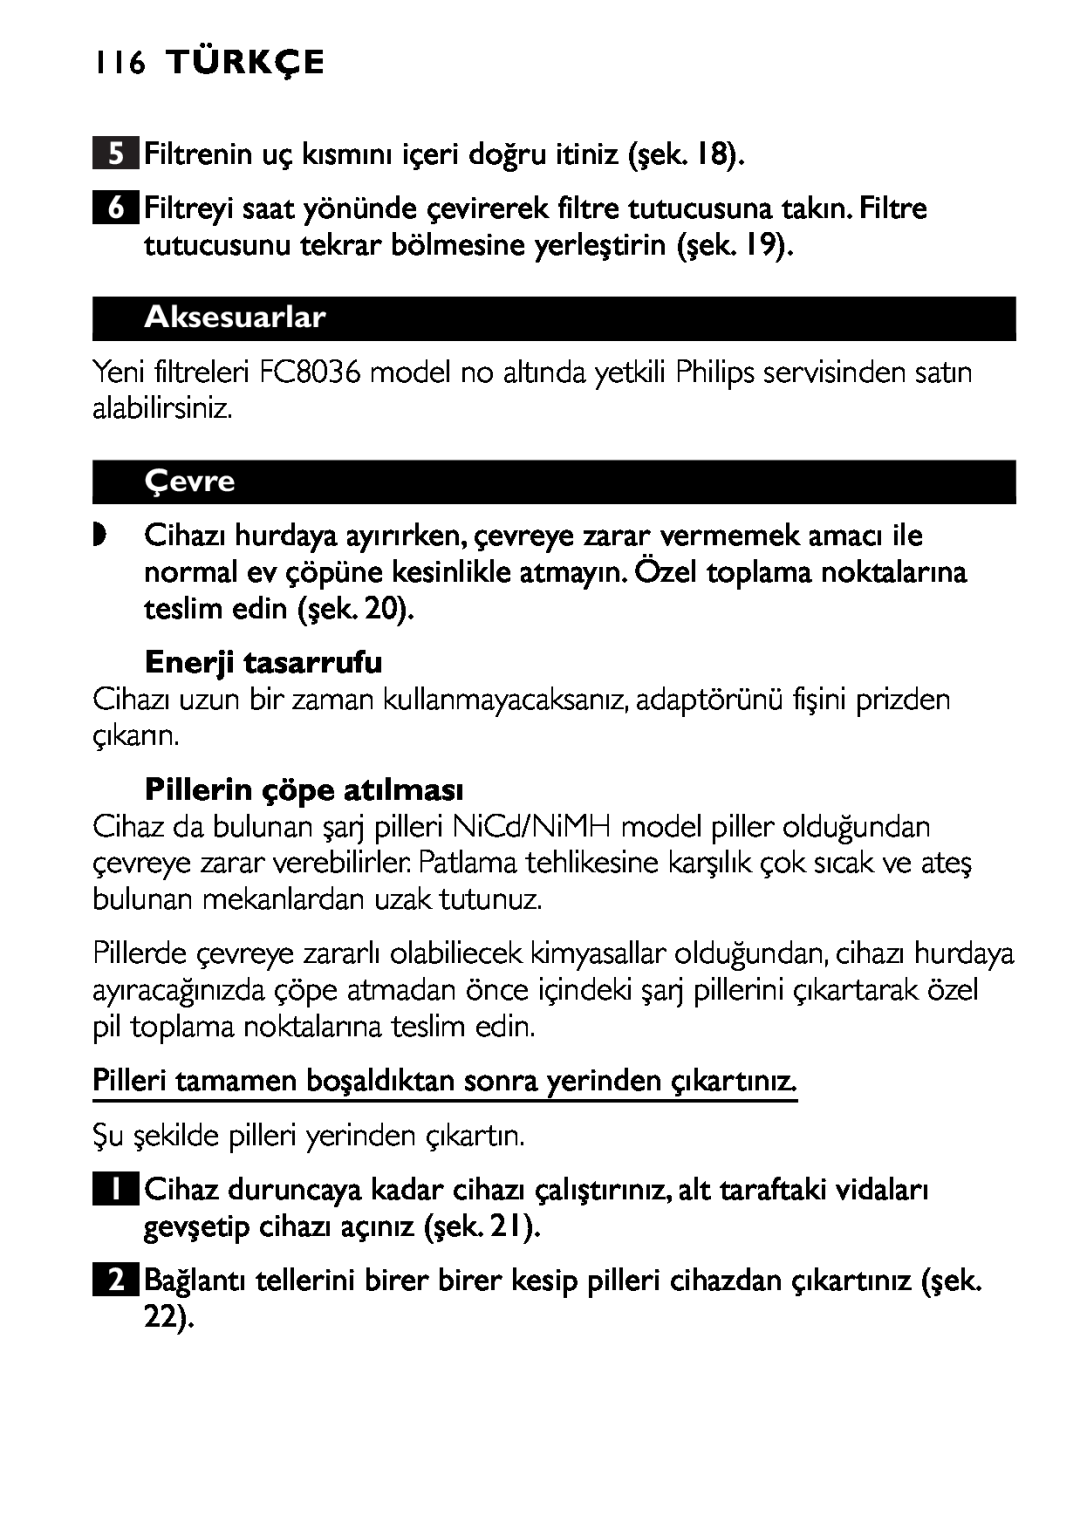 Philips FC6055 manual 116TÜRKÇE, Aksesuarlar, Çevre, Enerji tasarrufu, Pillerin çöpe atılması 